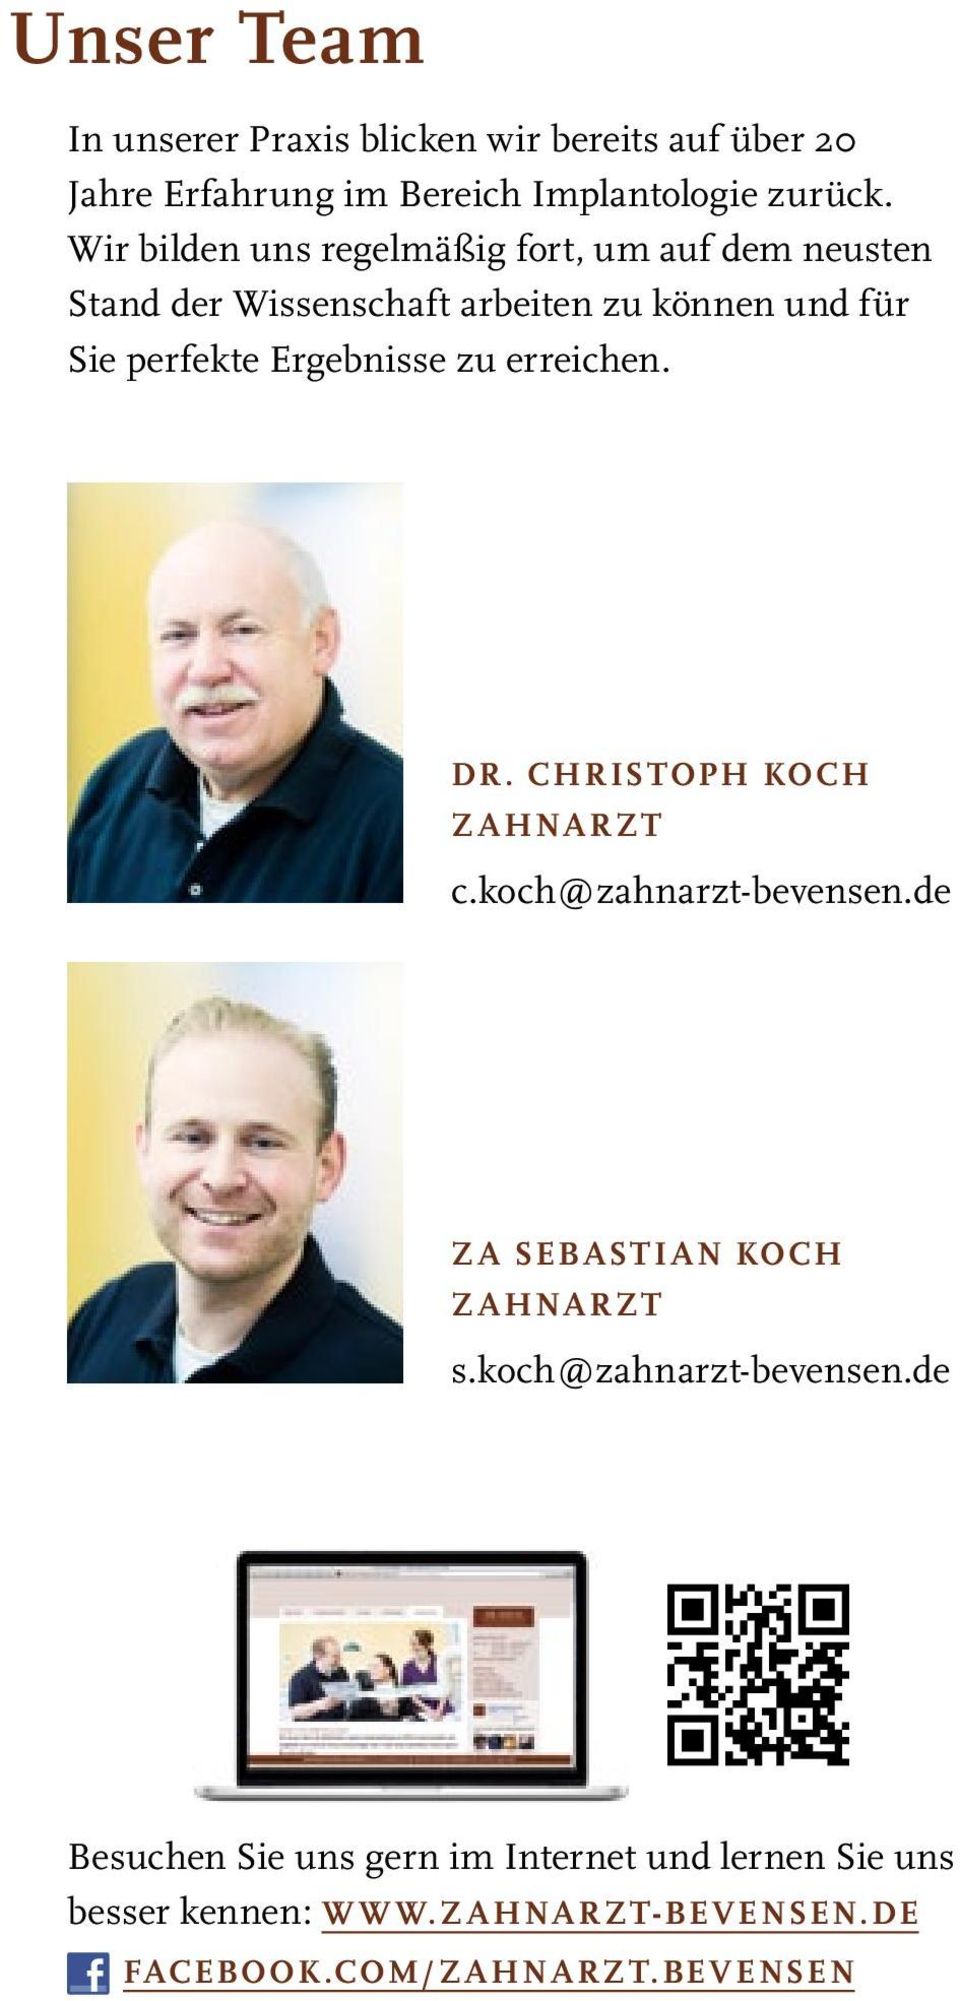 Ergebnisse zu erreichen. Dr. Christoph KocH Zahnarzt c.koch@zahnarzt-bevensen.de ZA SEBASTIAN KOCH zahnarzt s.